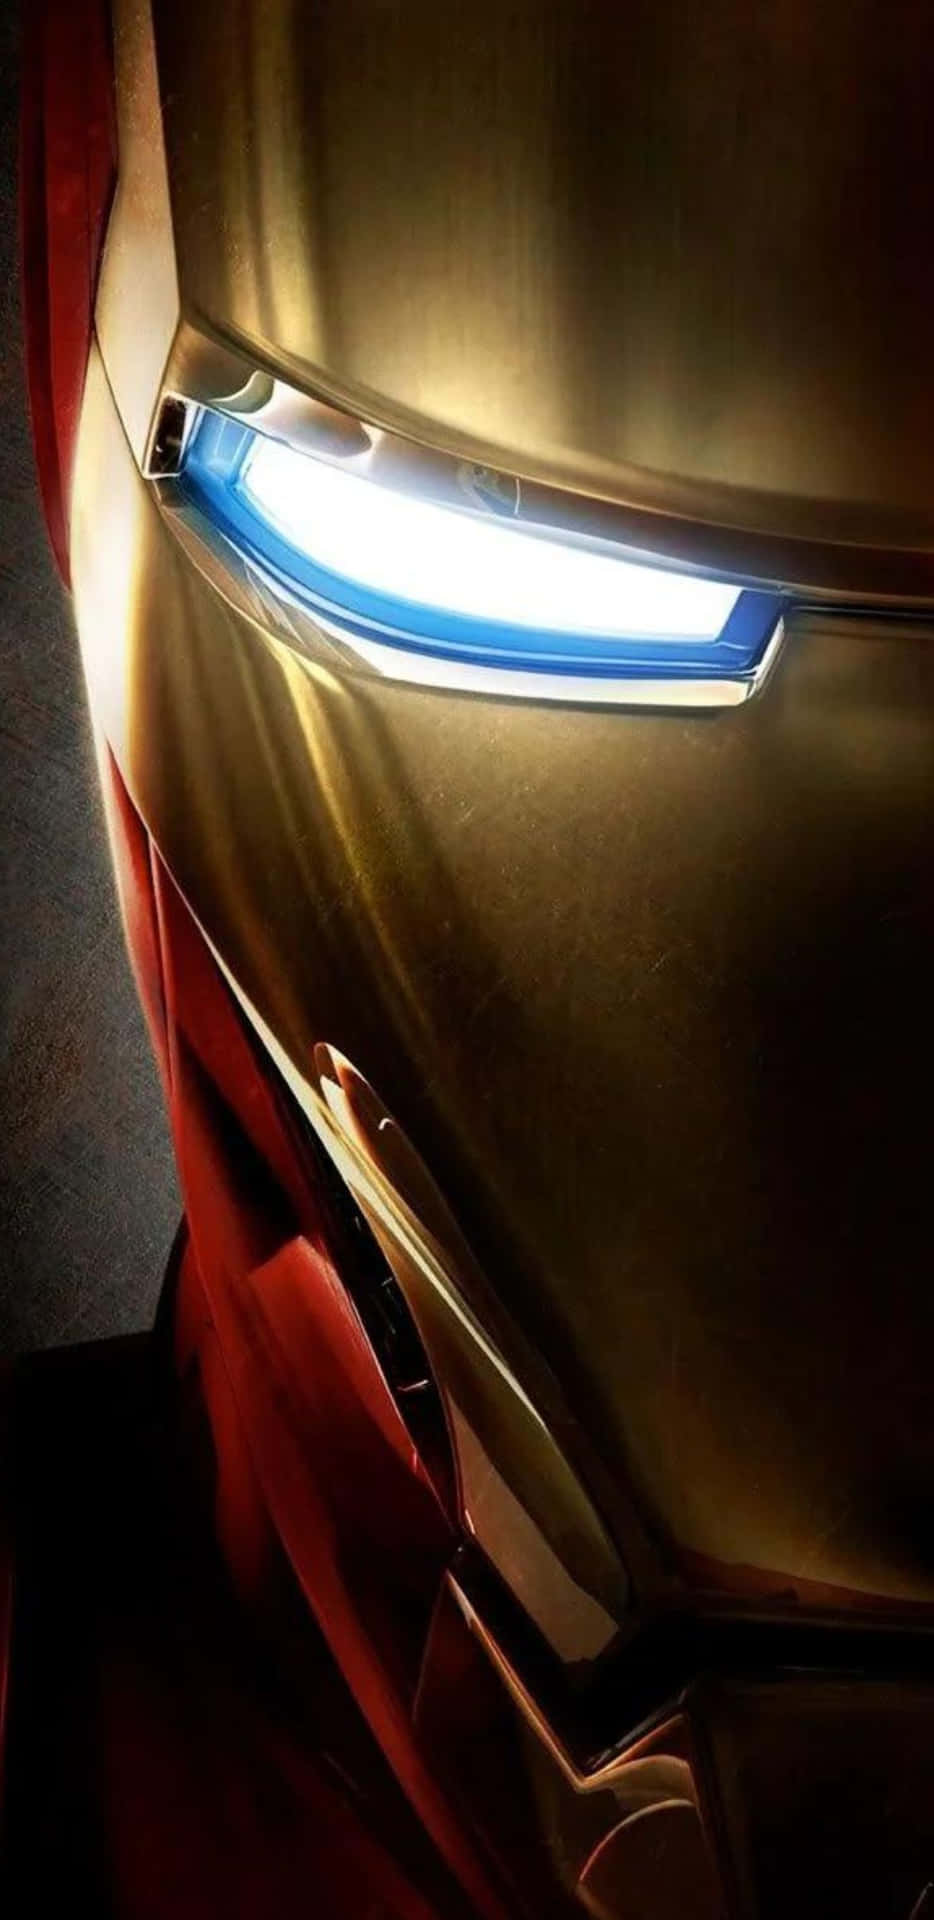 Pixel3xl Iron Man Mask Bakgrundsbild.